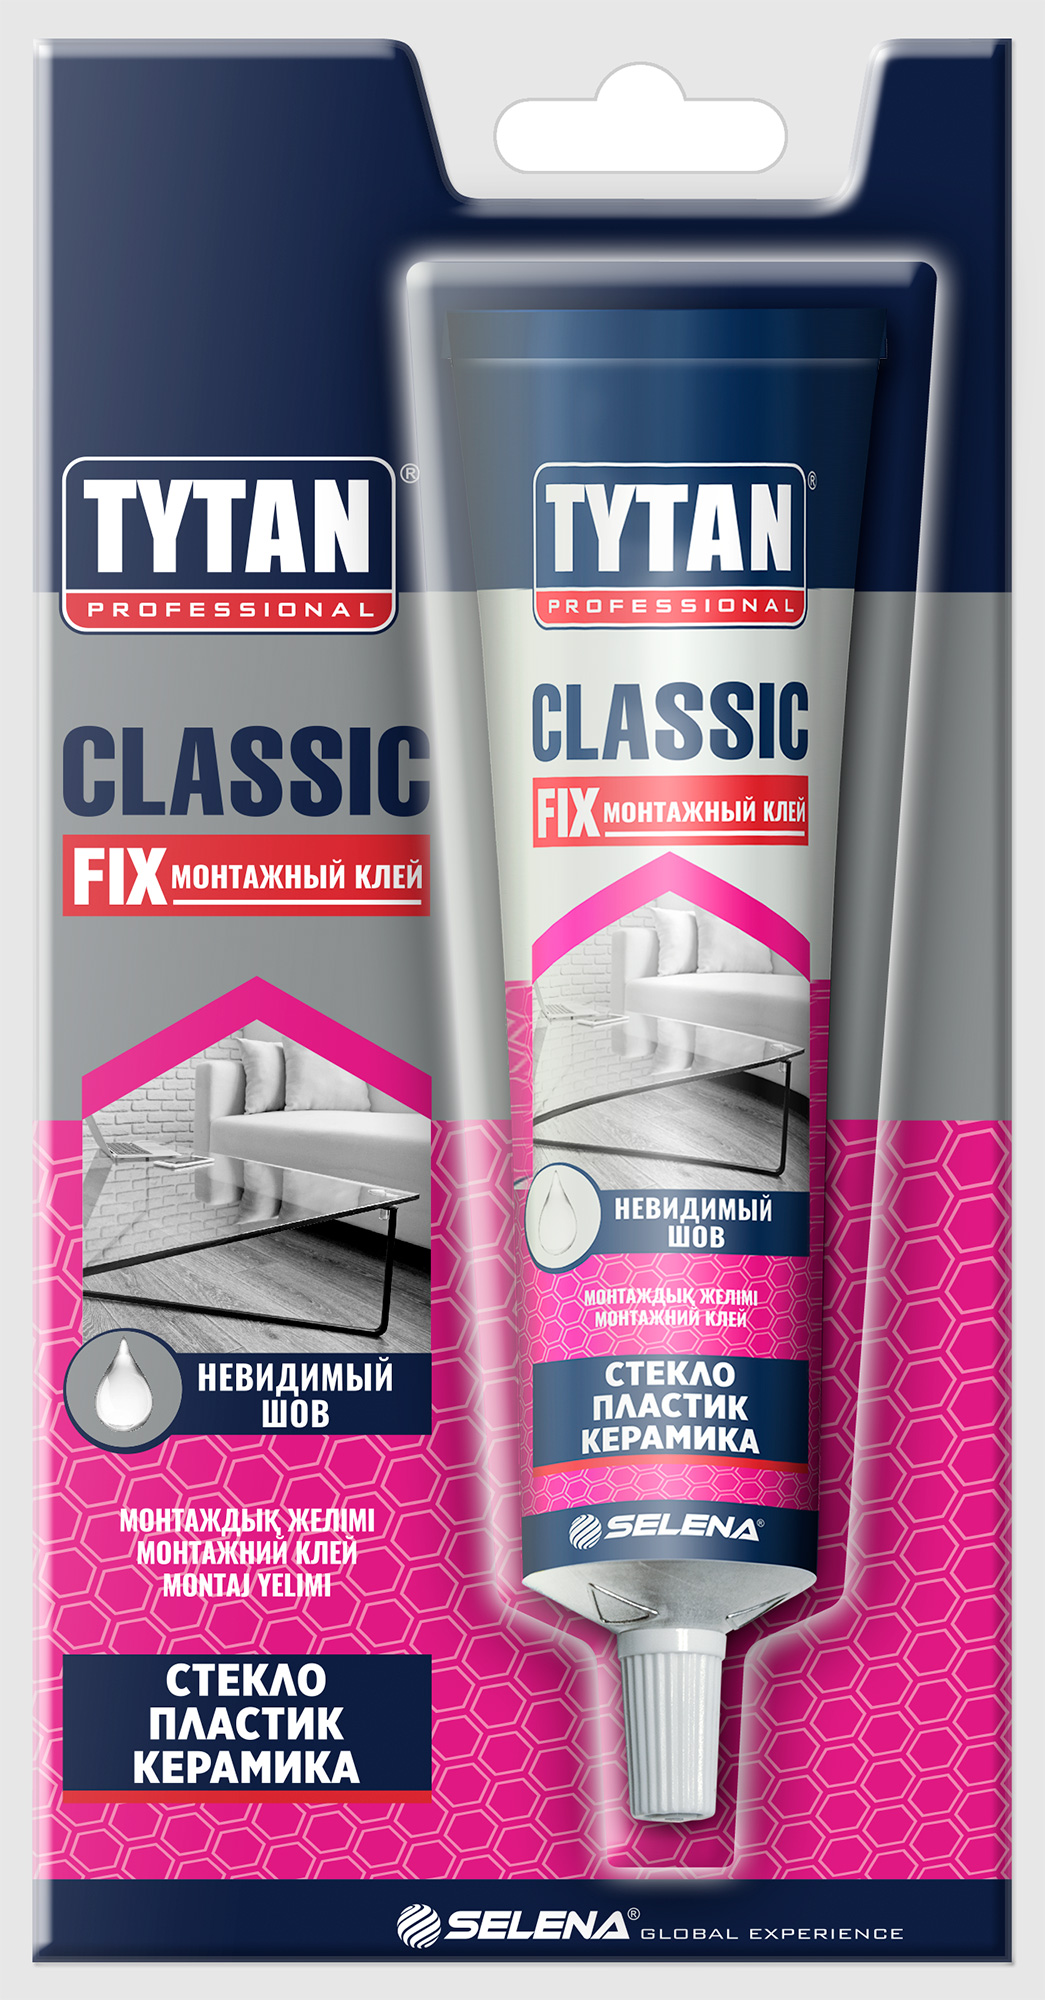 Клей tytan fix прозрачный. Клей Tytan Classic Fix. Клей Tytan quick Fix. Tytan professional Classic Fix. Tytan Classic Fix монтажный клей.